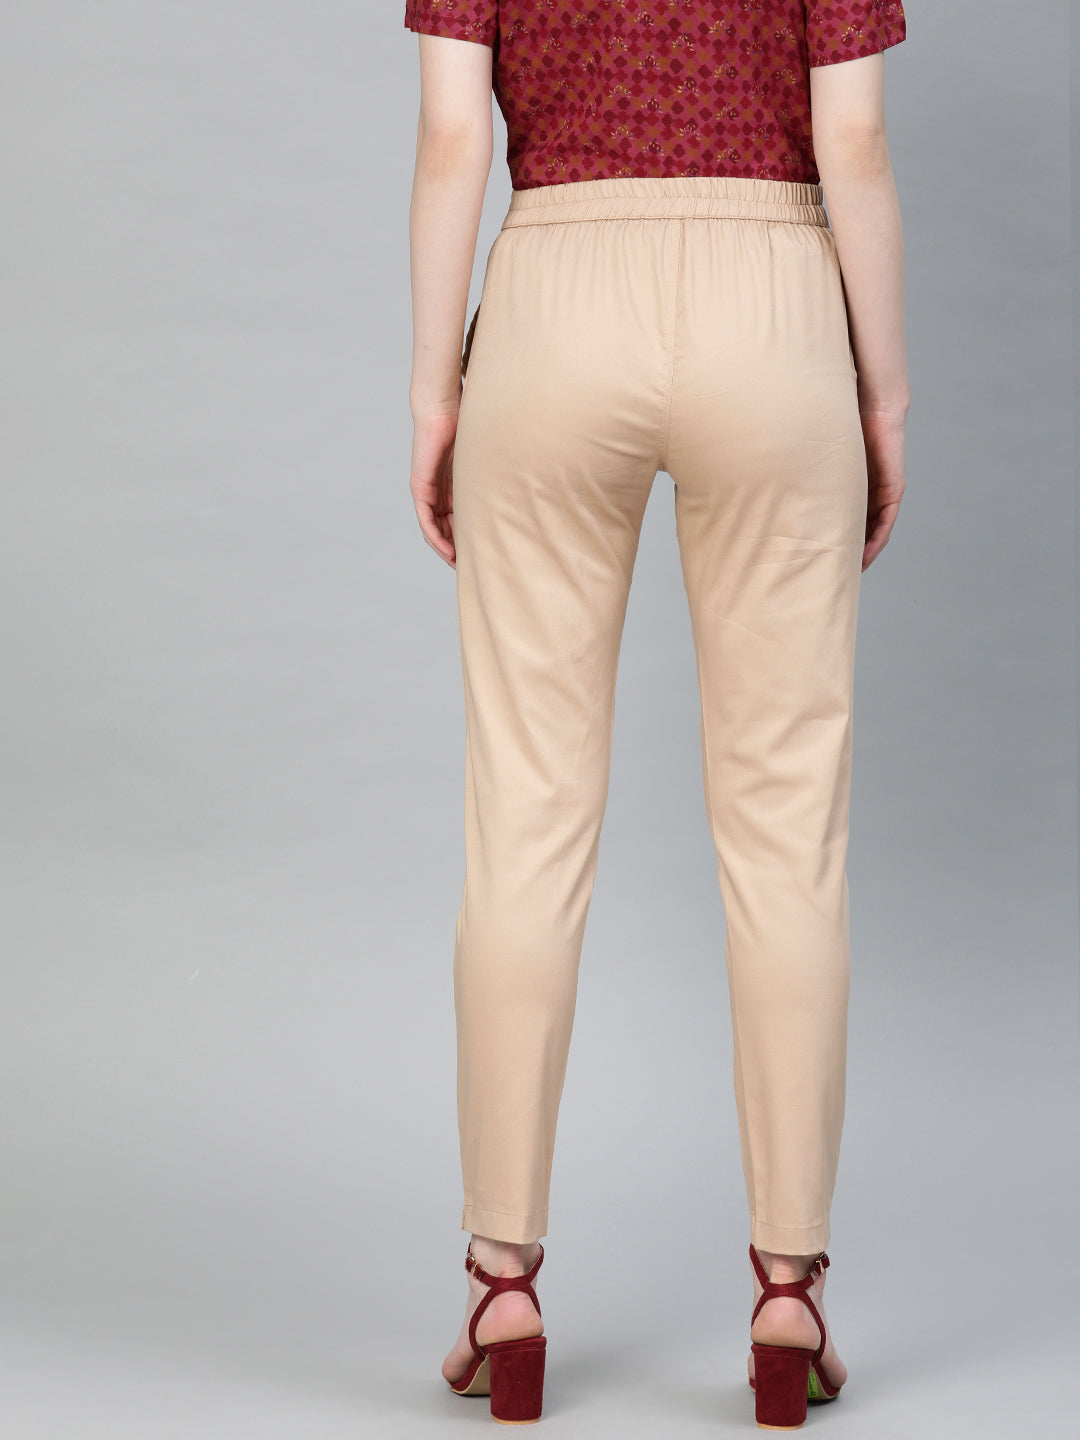 Shop Slim Fit Pants for Women